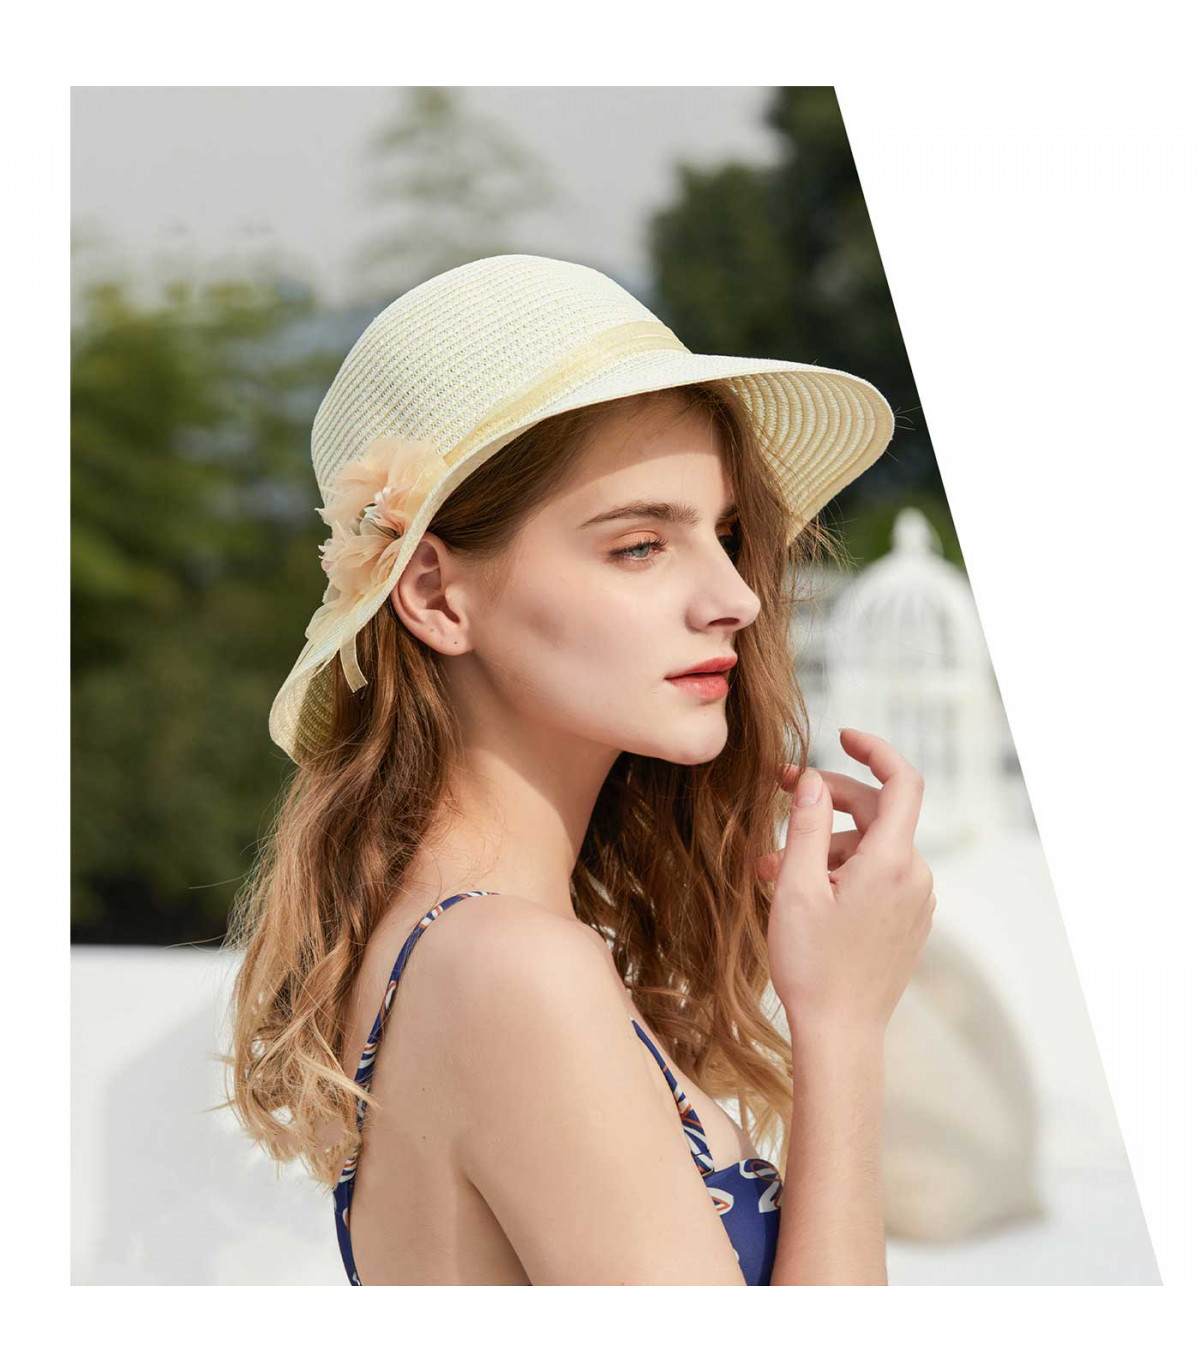 Tradineur - Sombrero de mujer con flor, paja flexible, ala ancha y goma barbilla, protección solar, playa, piscina, aire libr